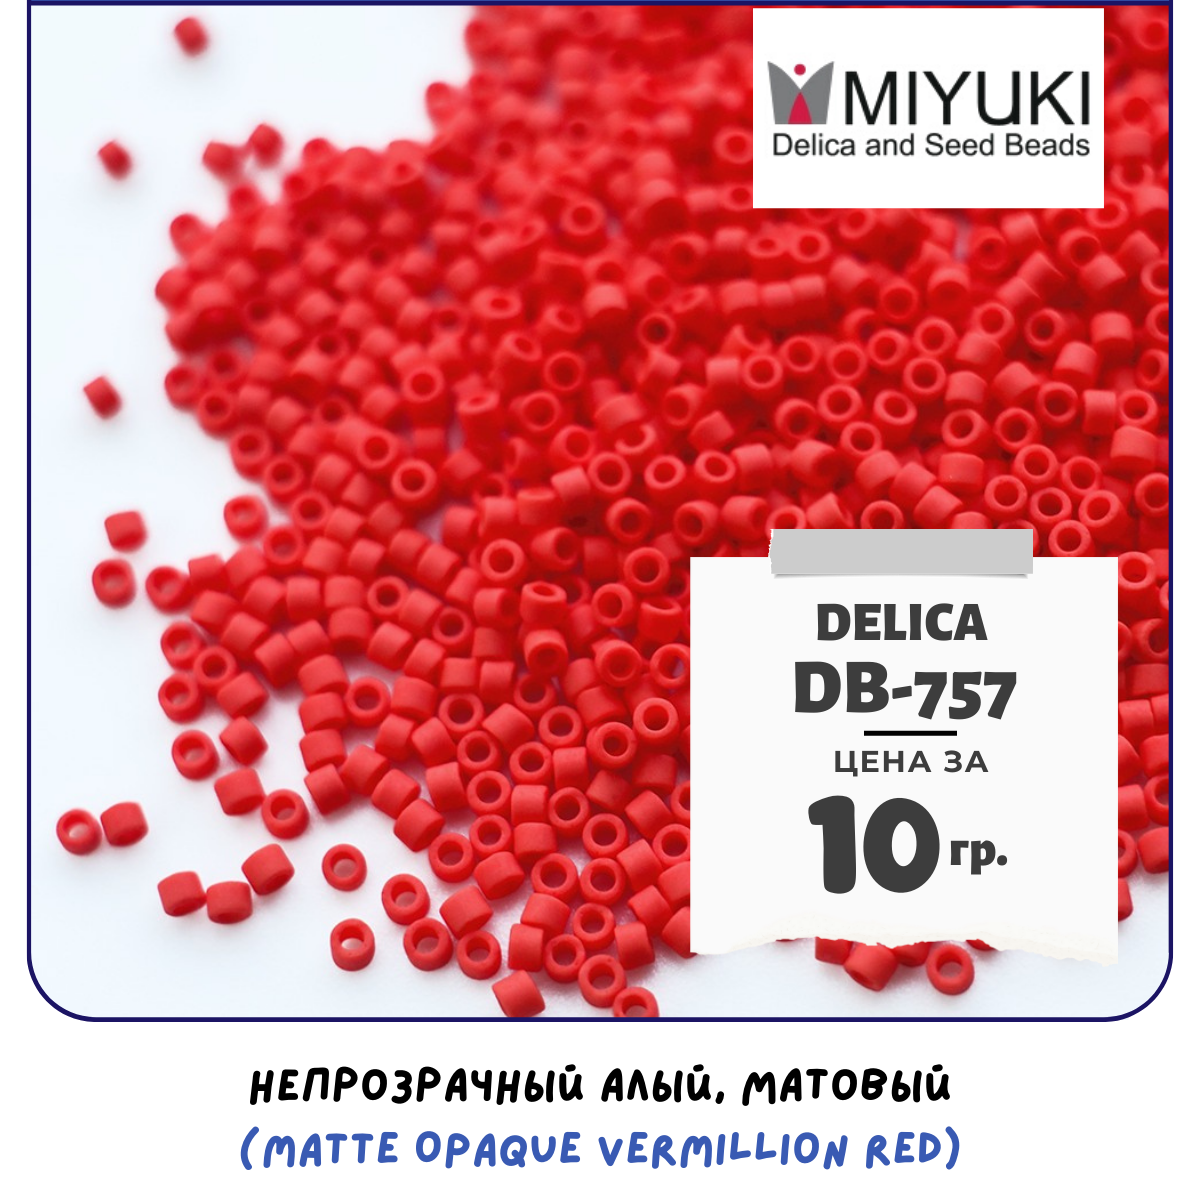 Бисер японский MIYUKI 10 гр Миюки цилиндрический Delica Делика 11/0 размер 11 DB-757 цвет непрозрачный алый, матовый (Matte Opaque Vermillion Red)